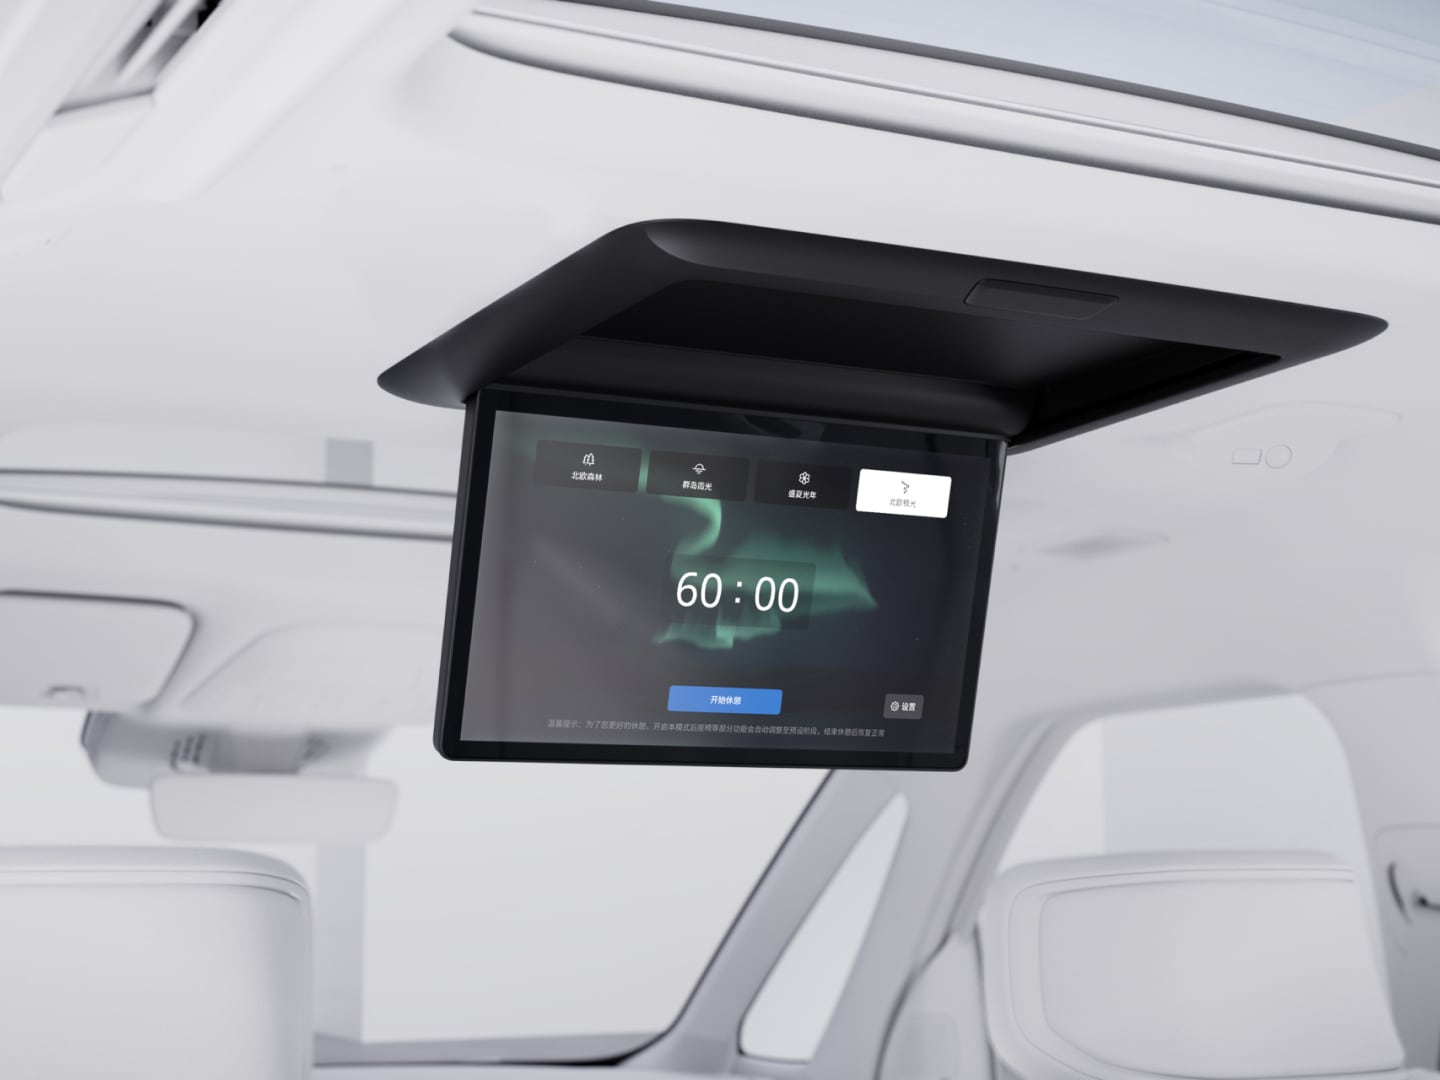 沃尔沃 EM90 车顶显示屏向下折叠并显示待机模式界面图示。